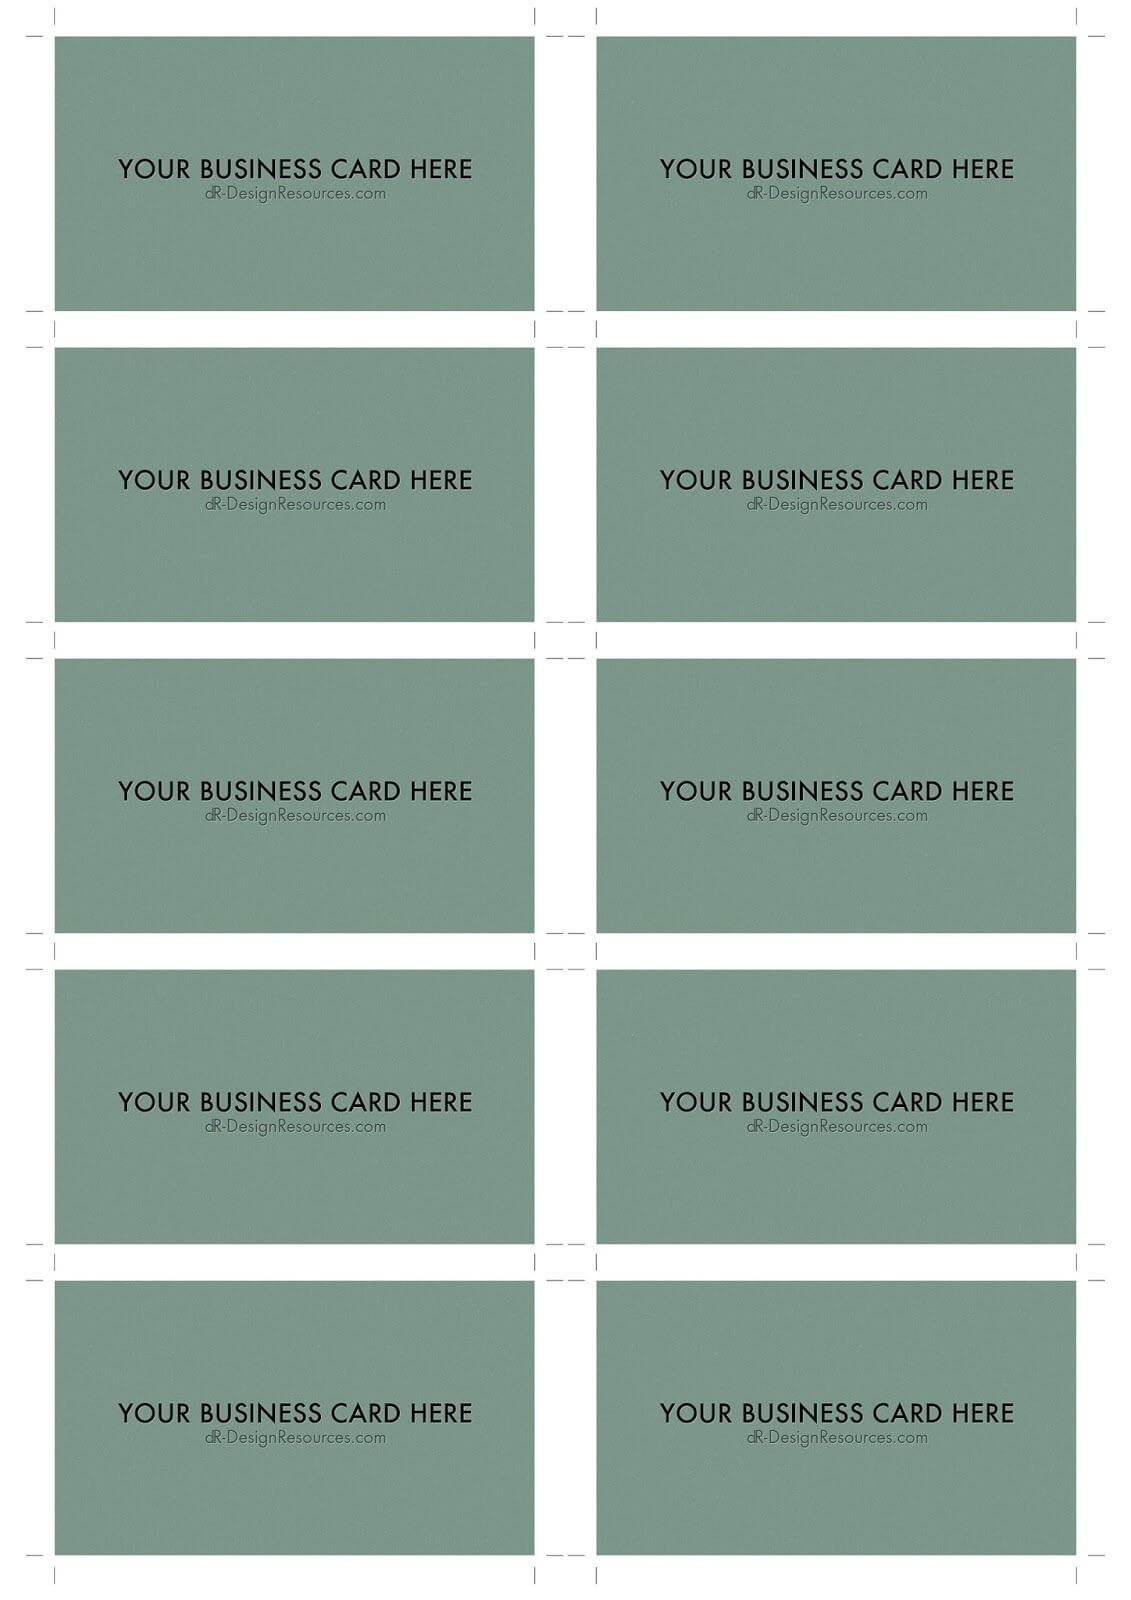 A4 Business Card Template Psd (10 Per Sheet) | Business Card Regarding Business Card Size Psd Template